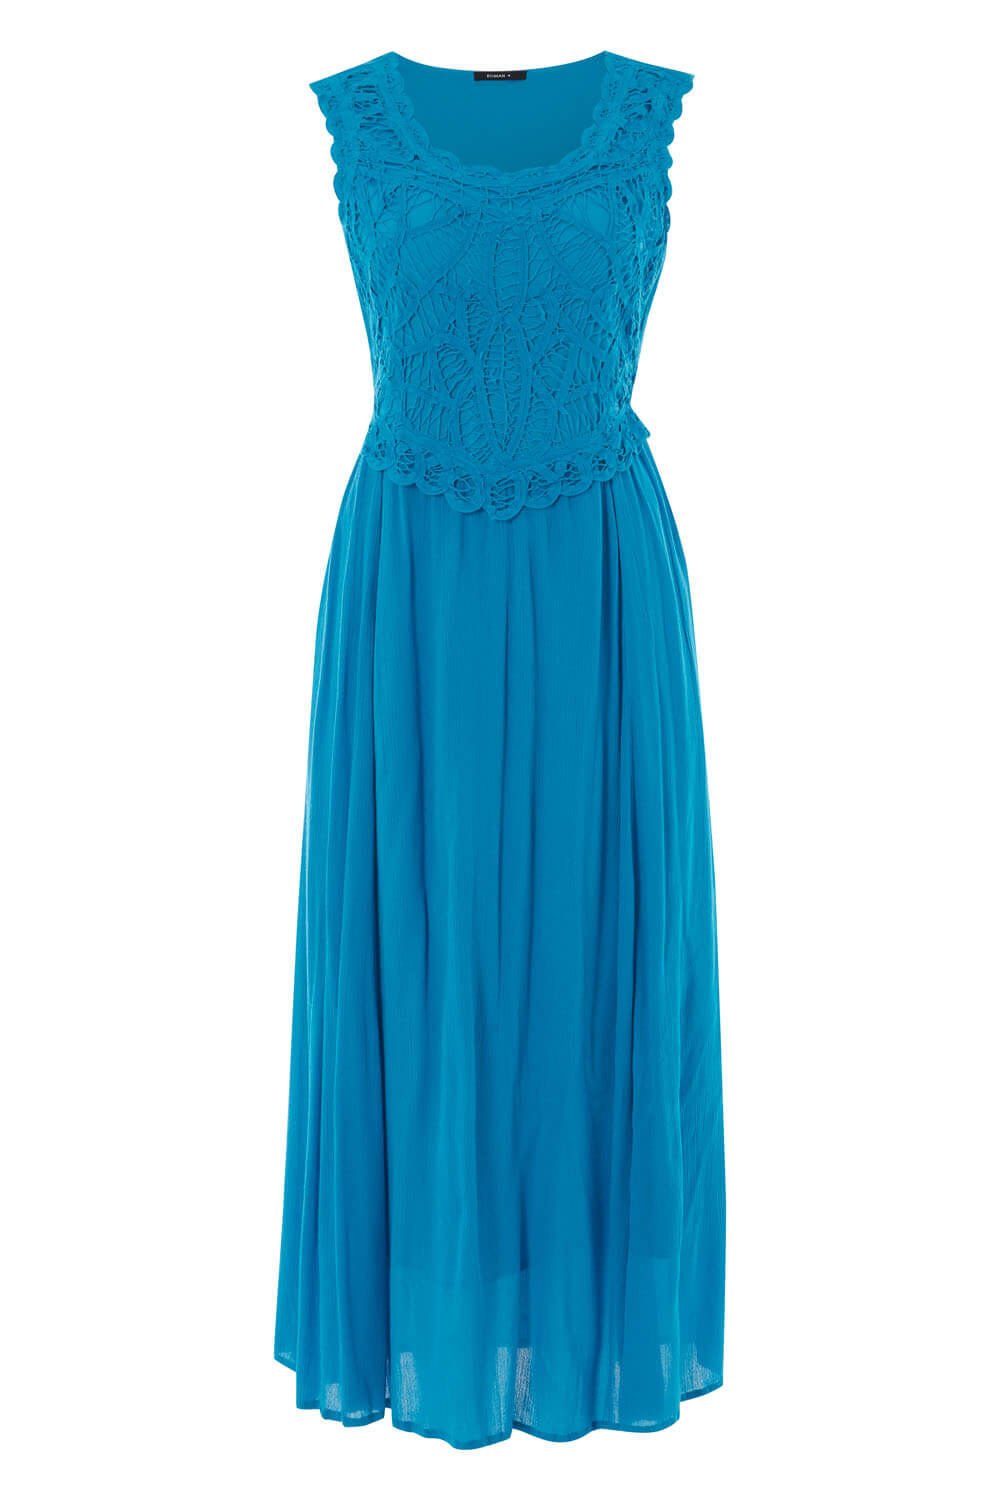 Turquoise Crochet Bodice Maxi Dress, Image 4 of 4